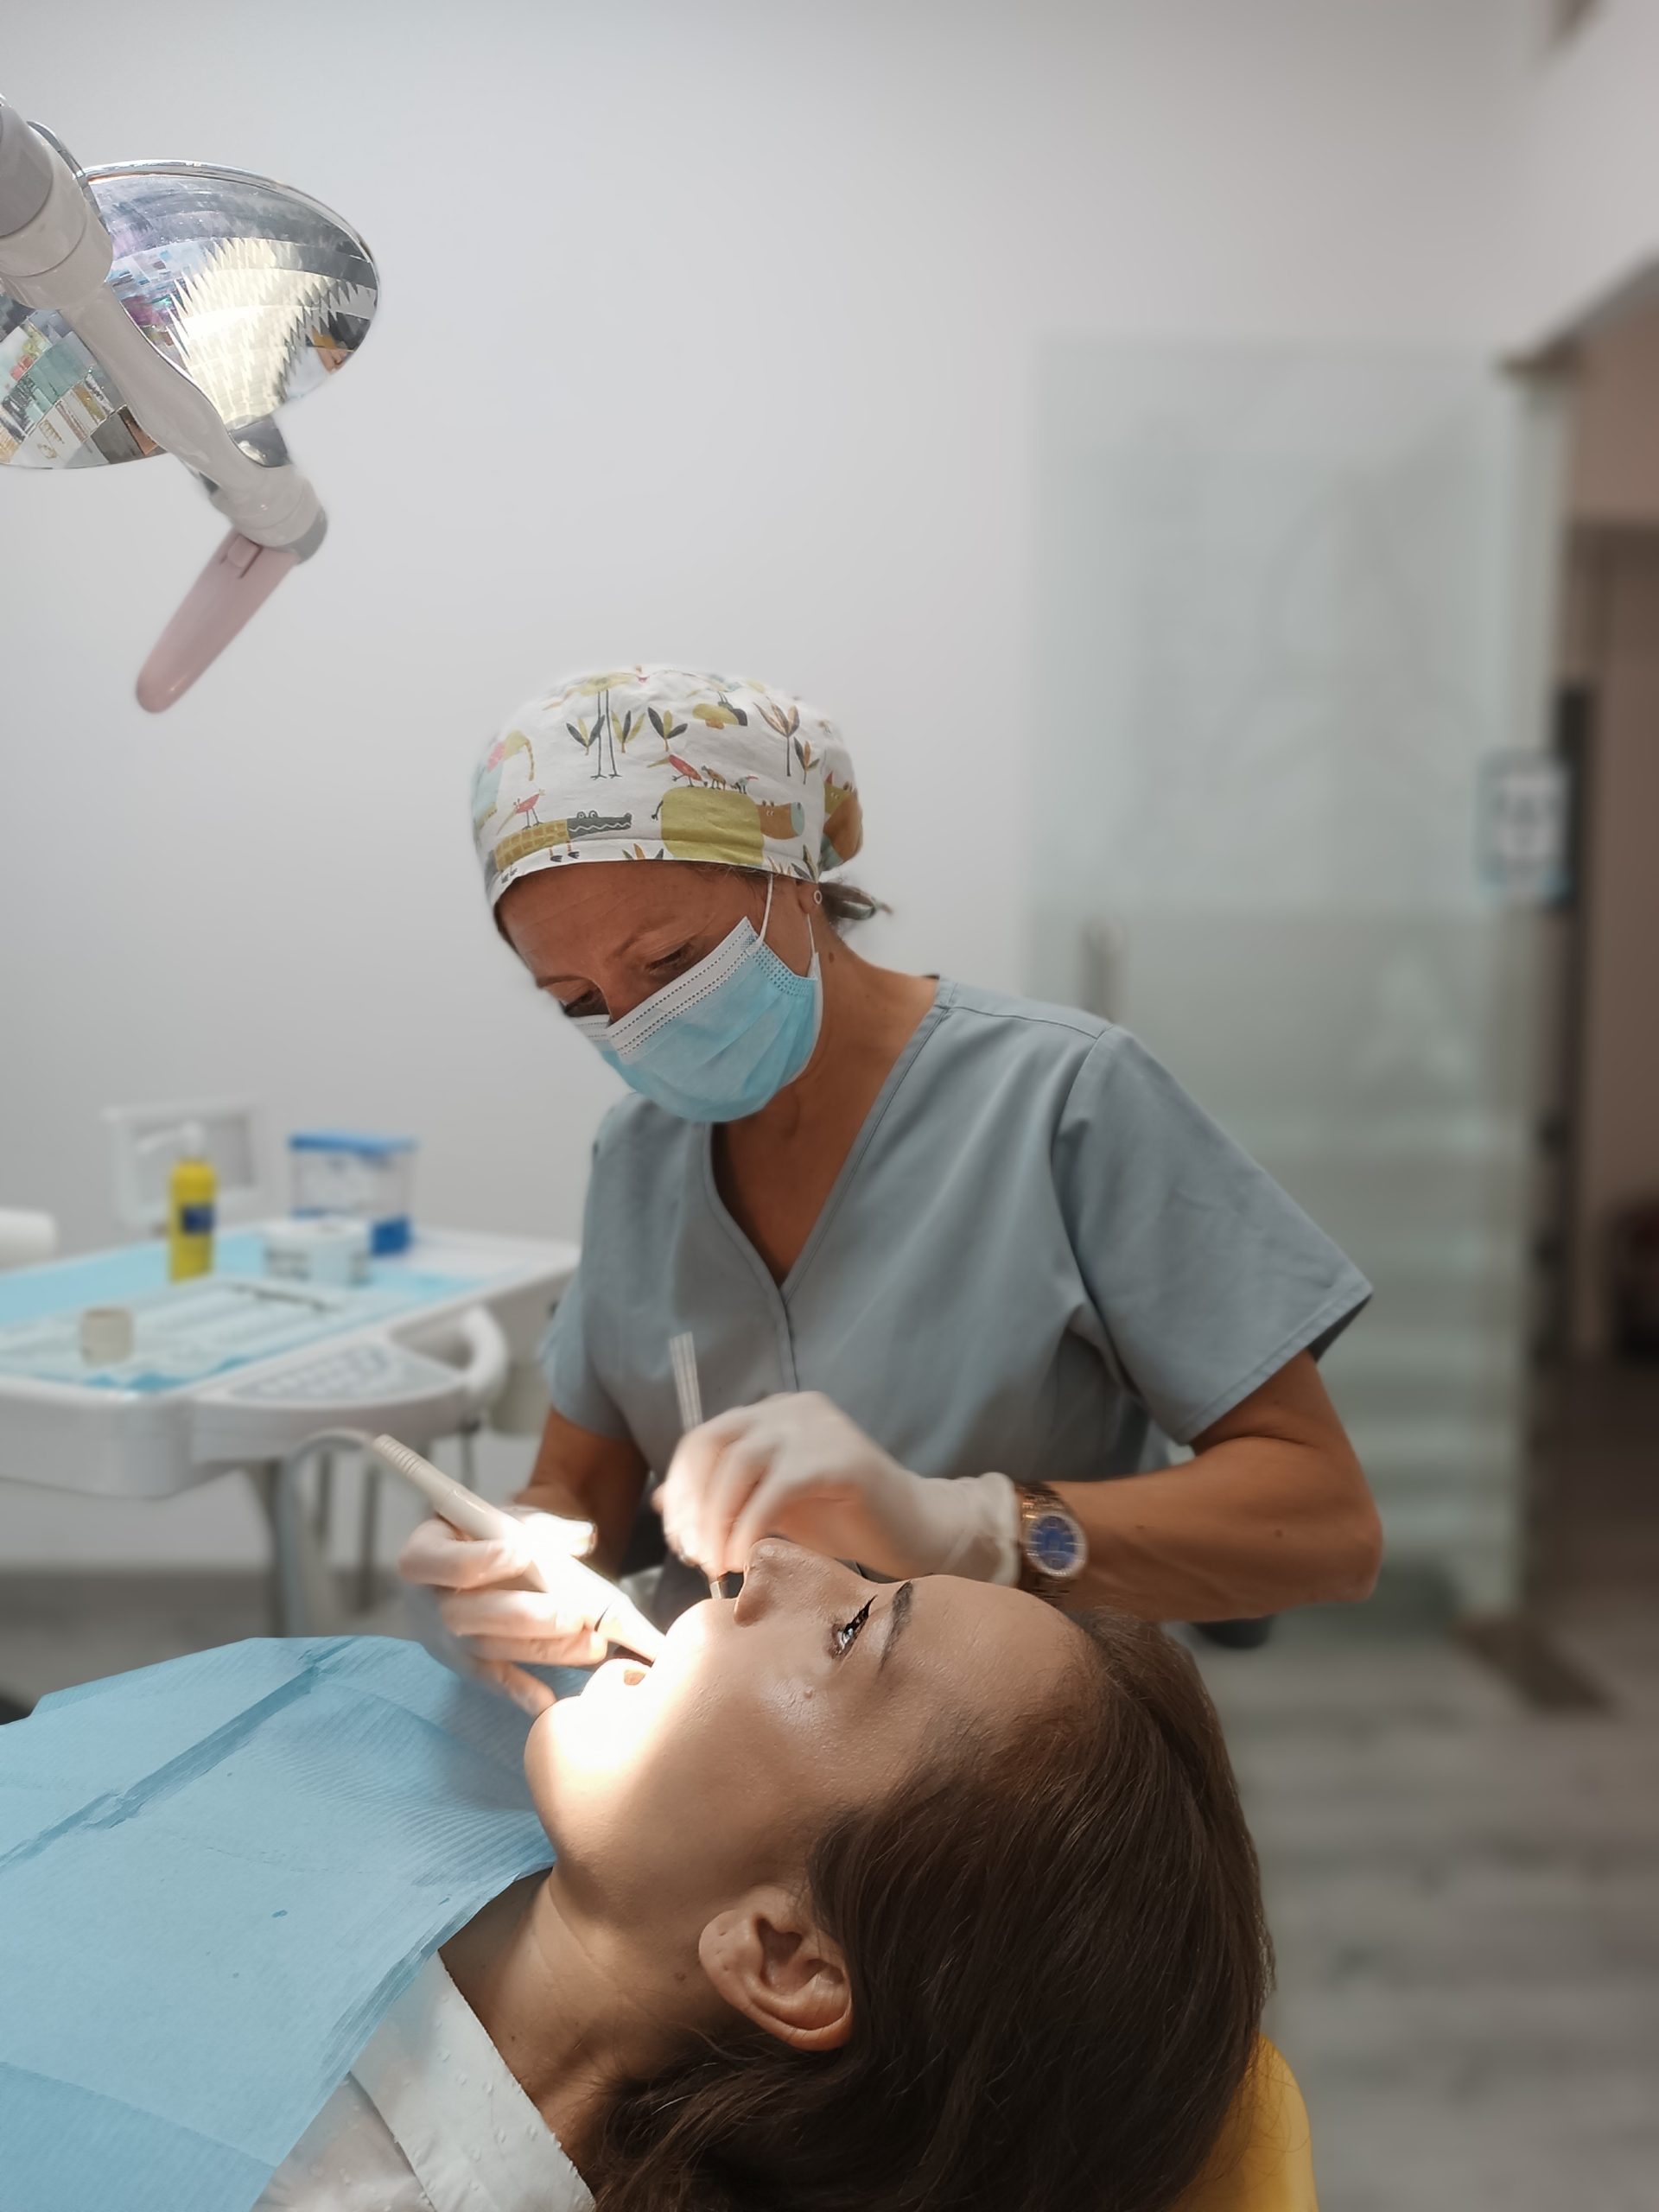 equipo dentista de Propiodent en Jaén haciendo tratamiento dental